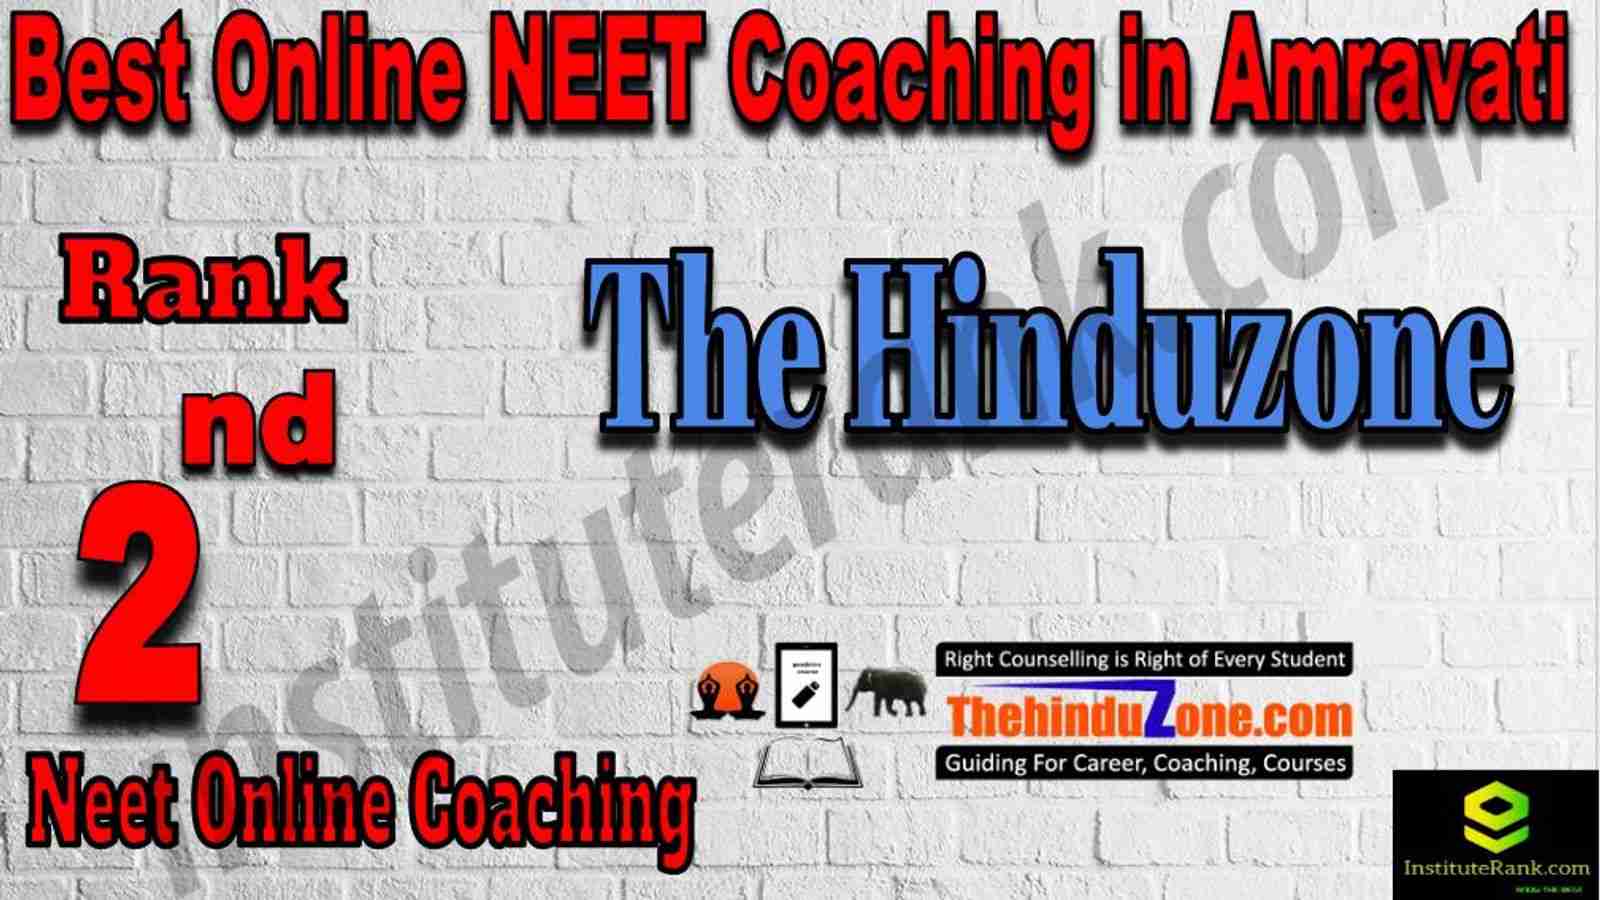 2nd Best Online Neet Coaching in Amravati